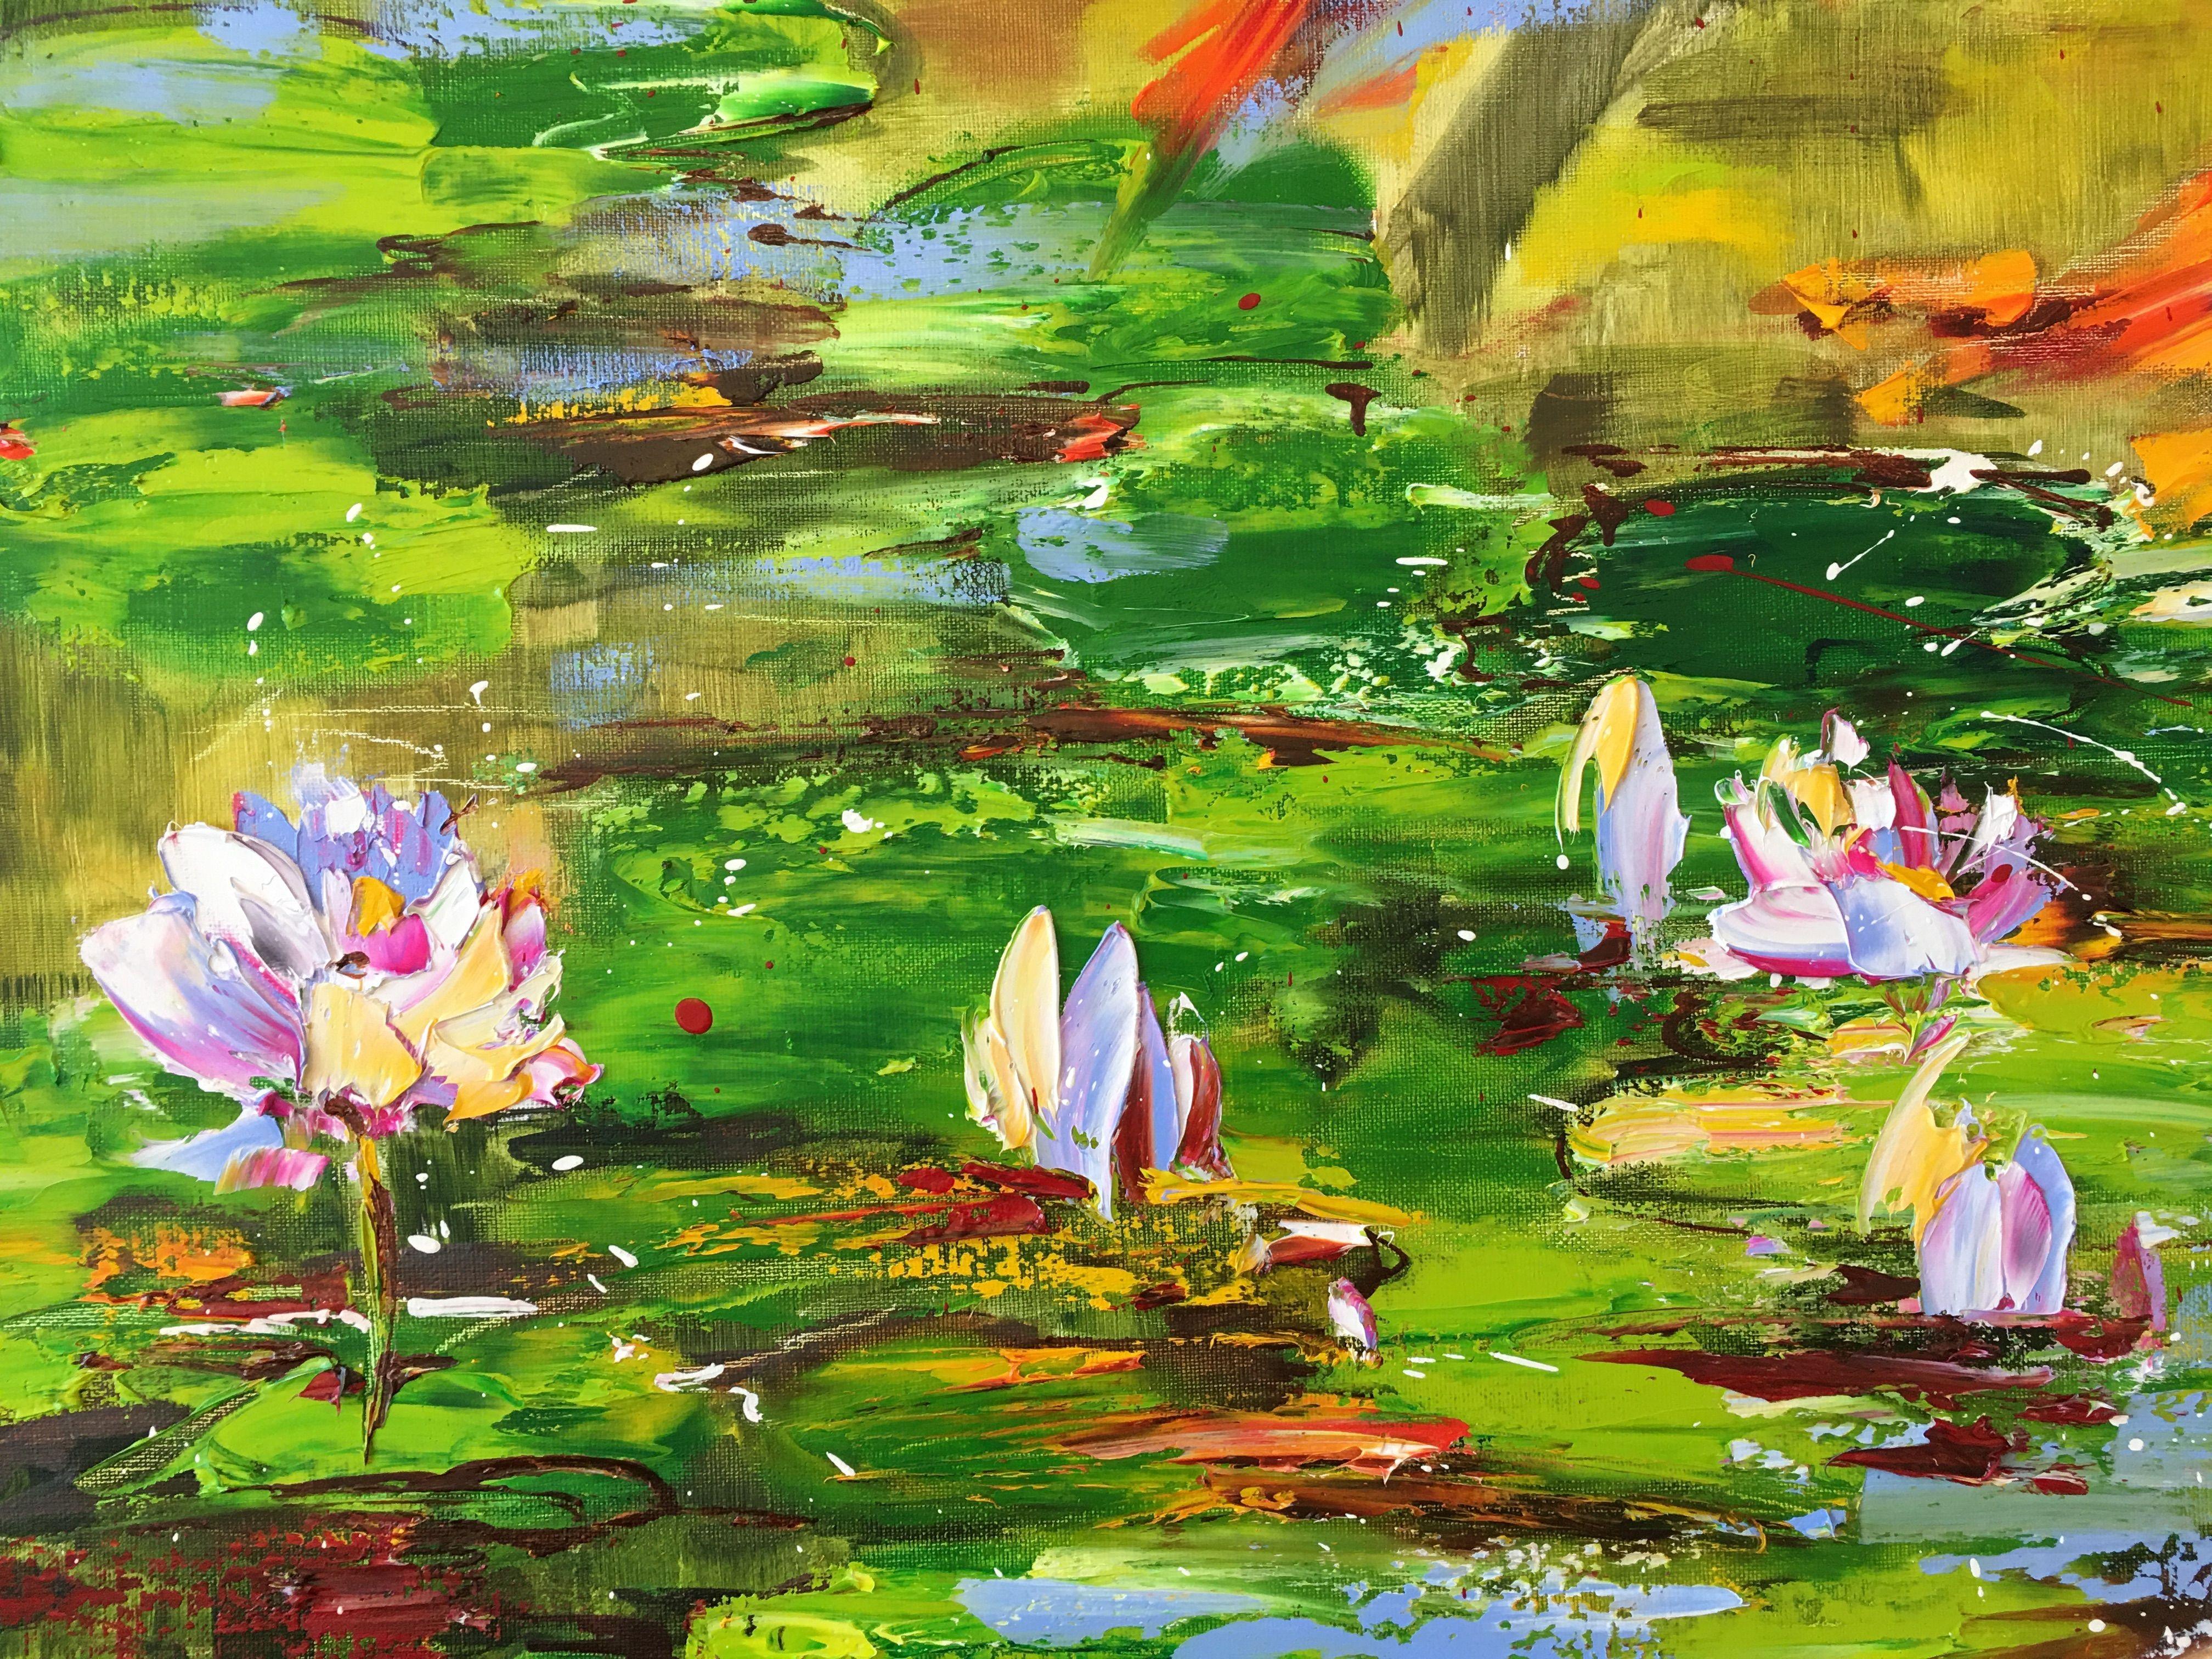 L'etang sous le soleil d'ete, Painting, Oil on Canvas 2